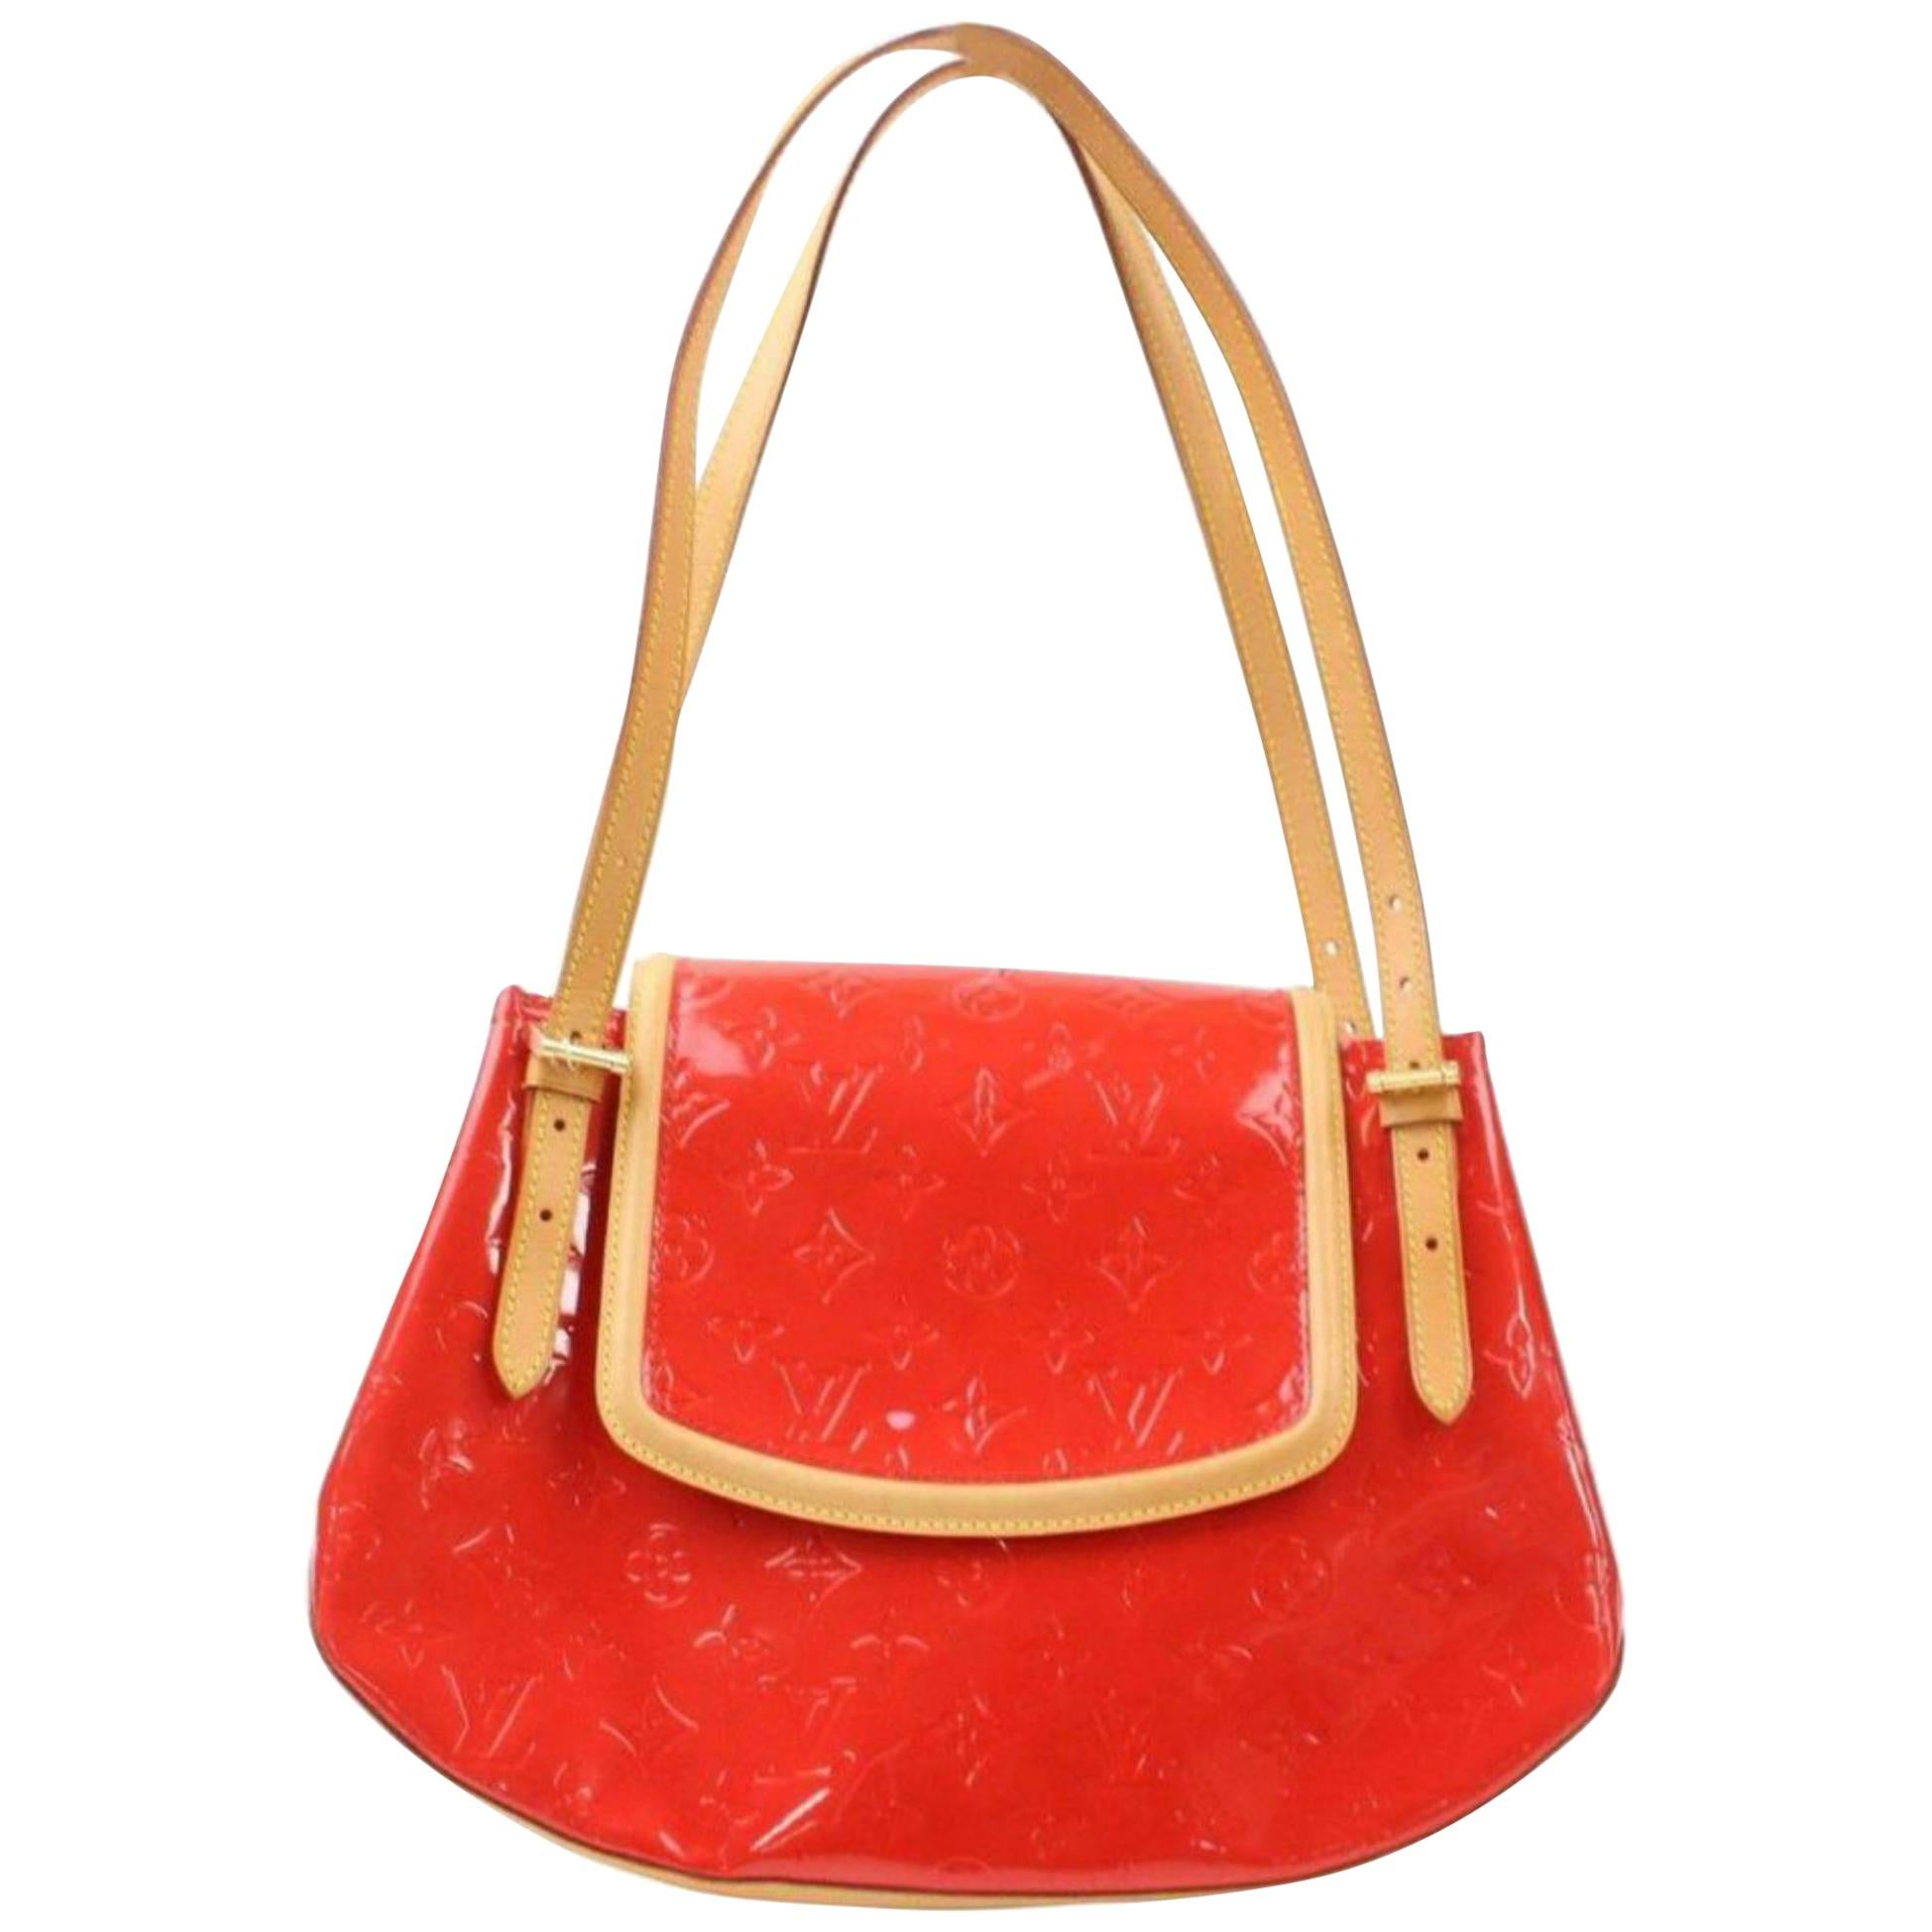 Louis Vuitton Biscayne Bay Gm 869144 Red Monogram Vernis Leather Shoulder Bag For Sale